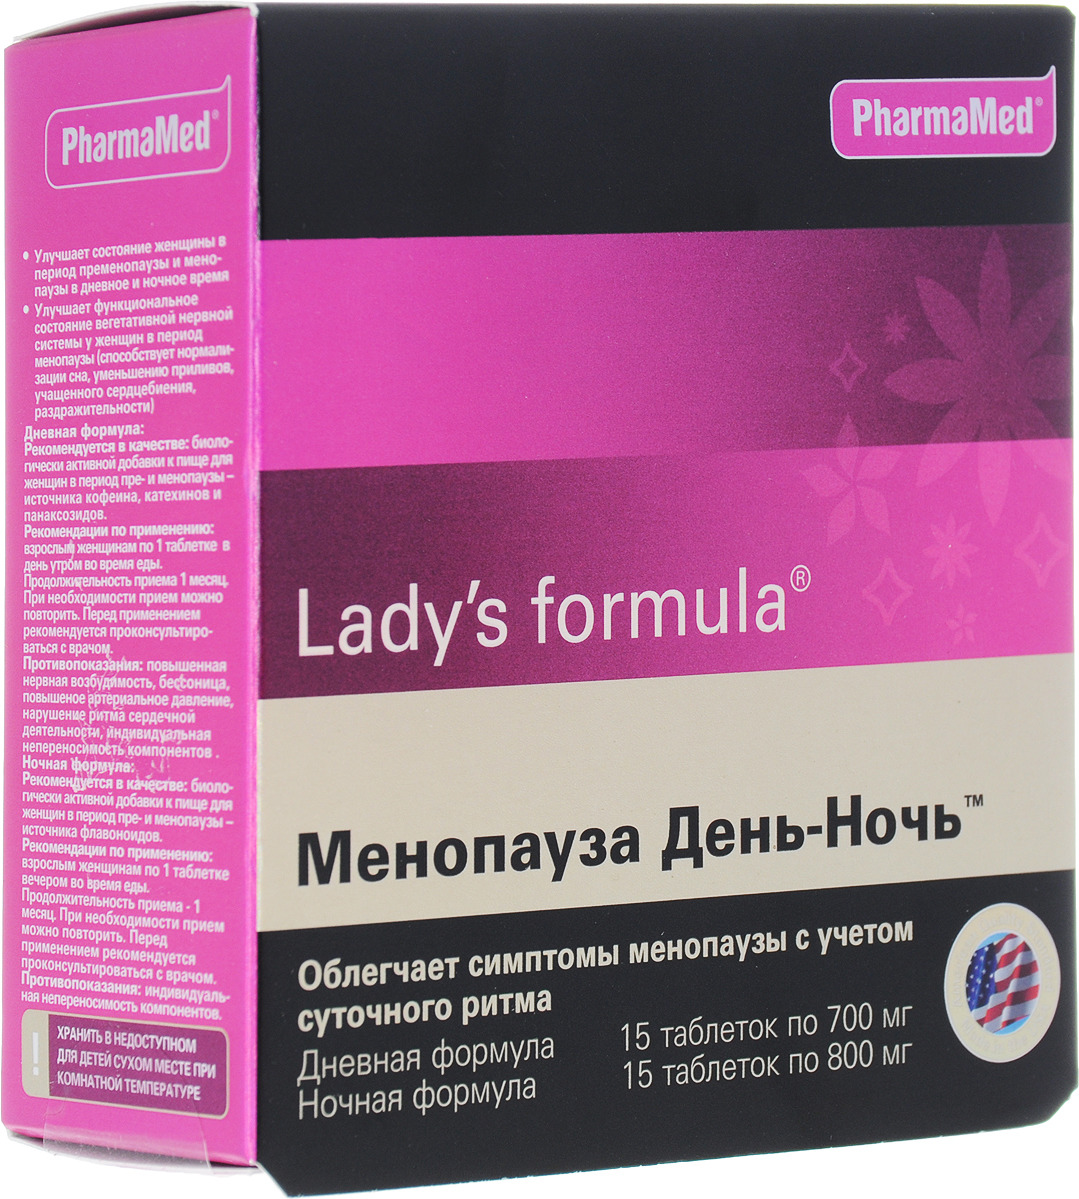 Менопауза усиленная формула аналоги. Витамины ледис формула менопауза усиленная. Американские витамины для женщин ледис формула. Менопауза ледис формула таблетки. Витамины ледис формула при менопаузе.